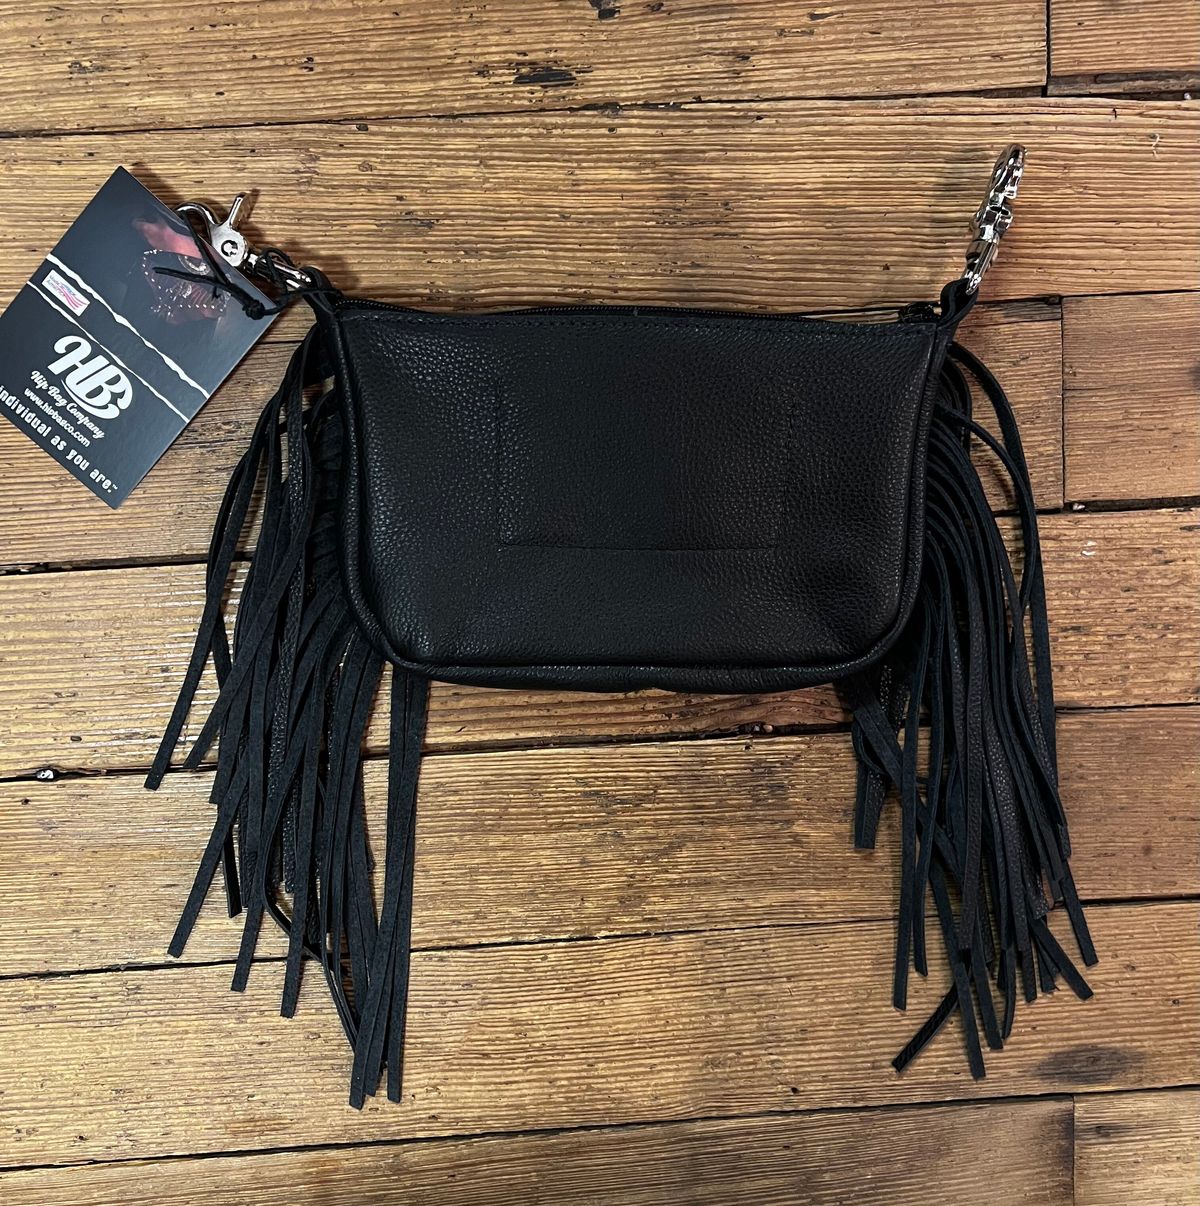 western hig bag or hand bag with fringe leather